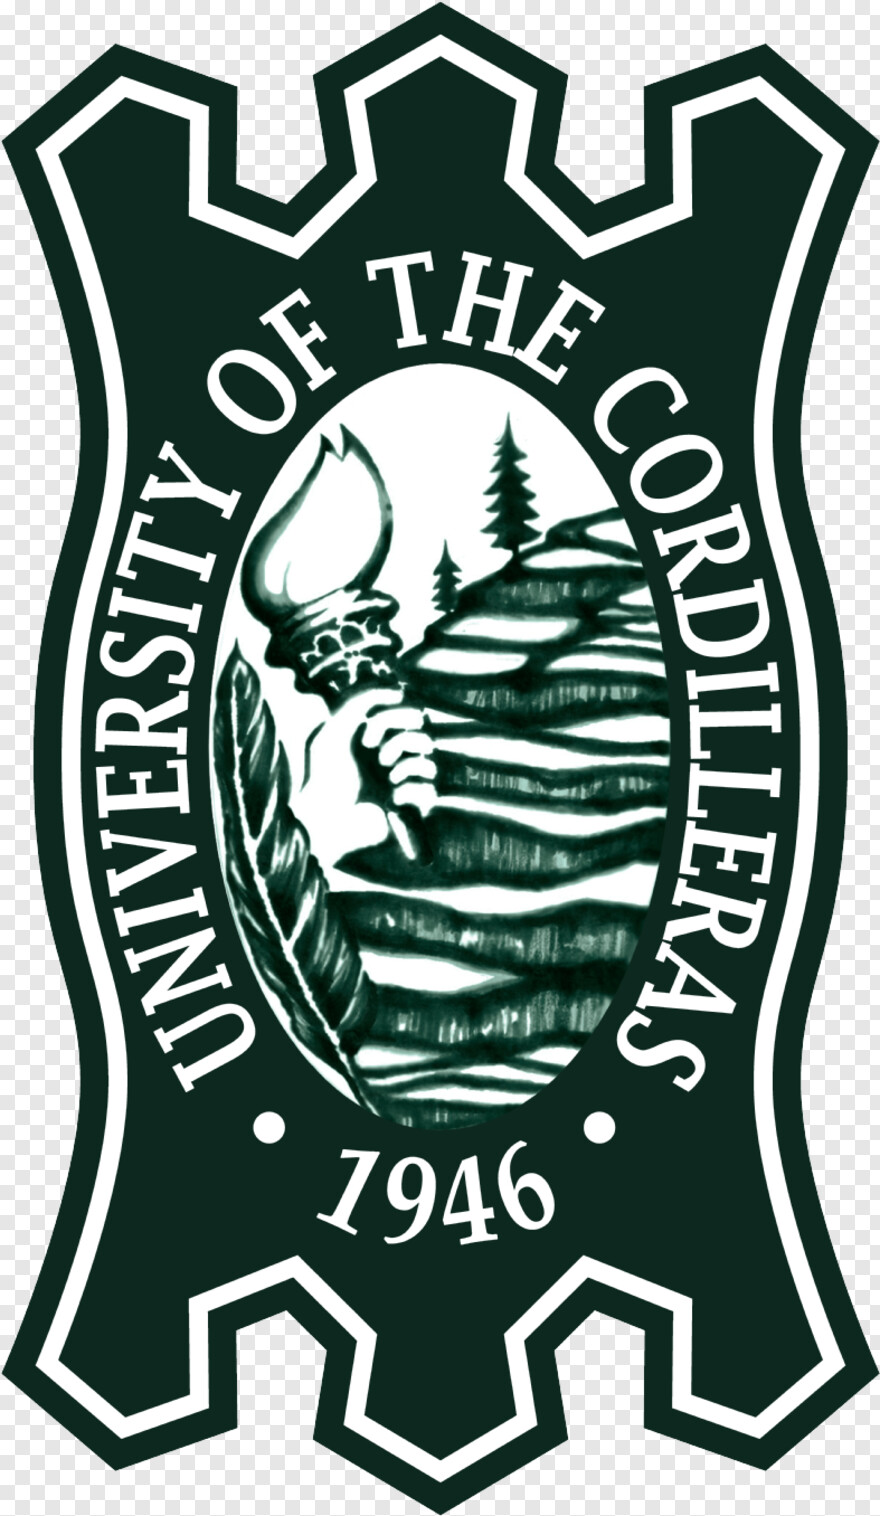 duke-university-logo # 629950